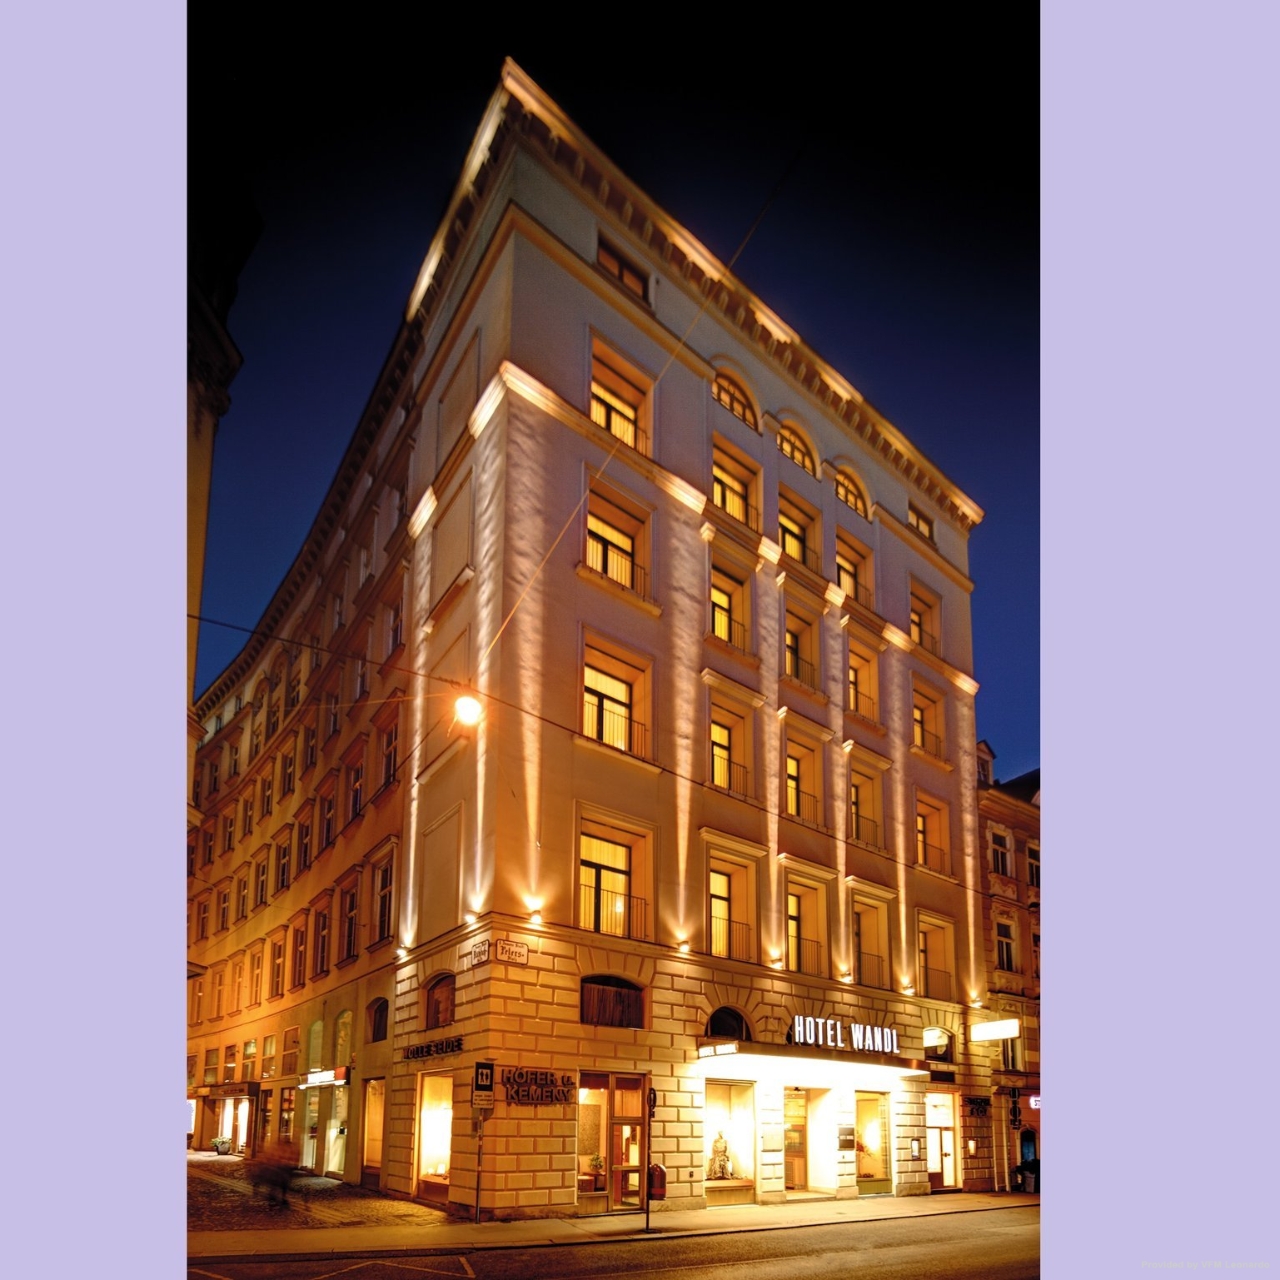 Hotel Wandl - 4 HRS star hotel in Vienna (Vienna)